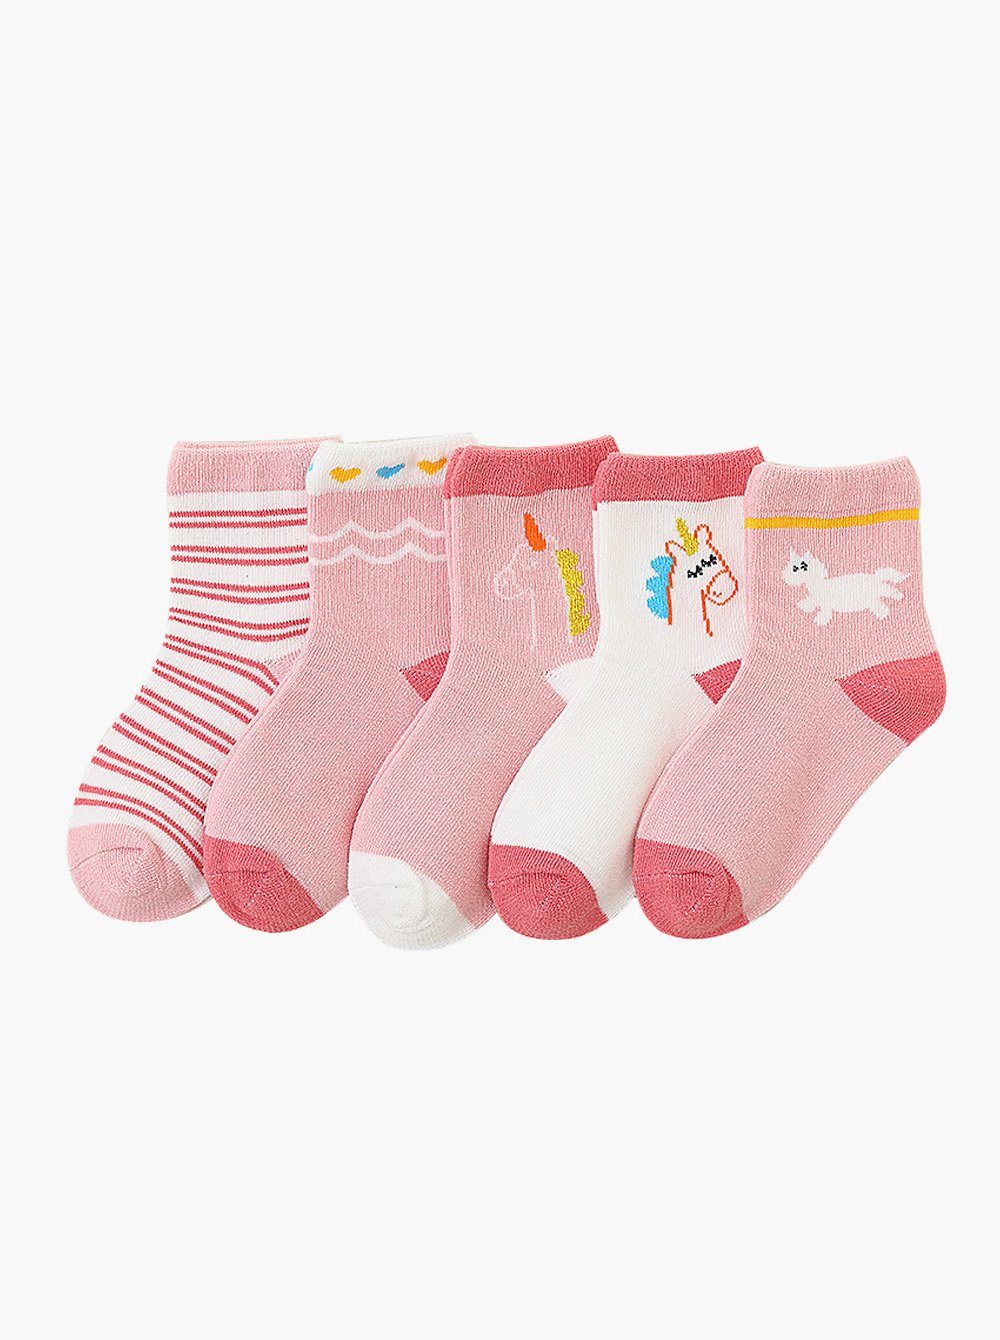 axy Langsocken axy Kinder Socken 5 Paar Multipack Mädchen Kindersocken (5er Pack) Geschenke Bunte Weich Kindersocken Einhorn